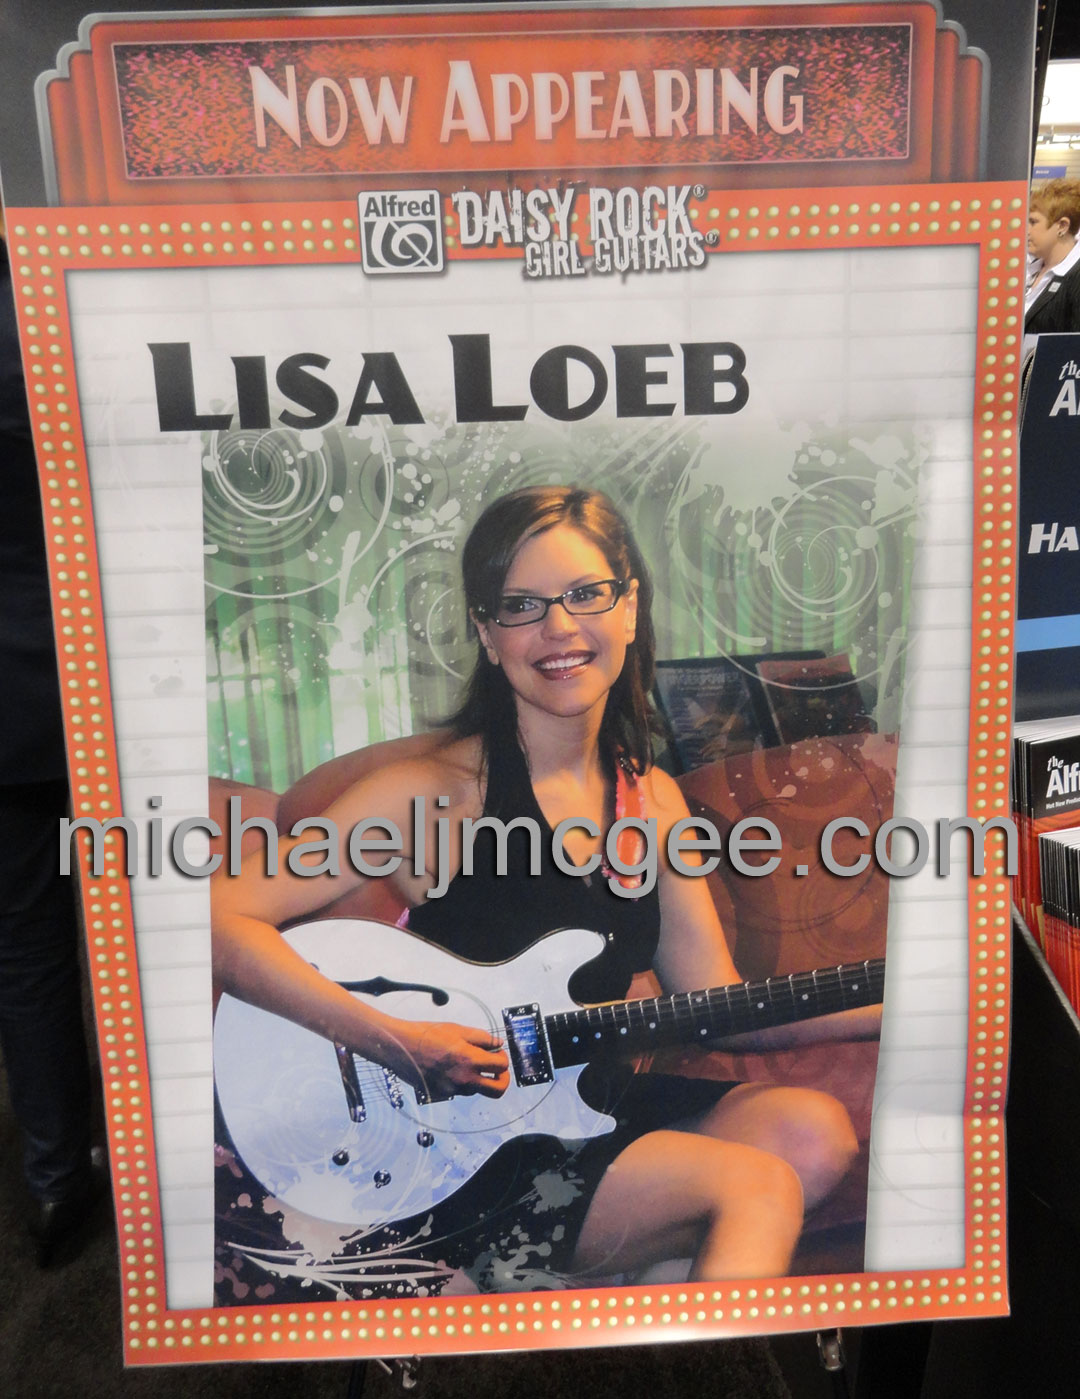 Lisa Loeb / michaeljmcgee.com